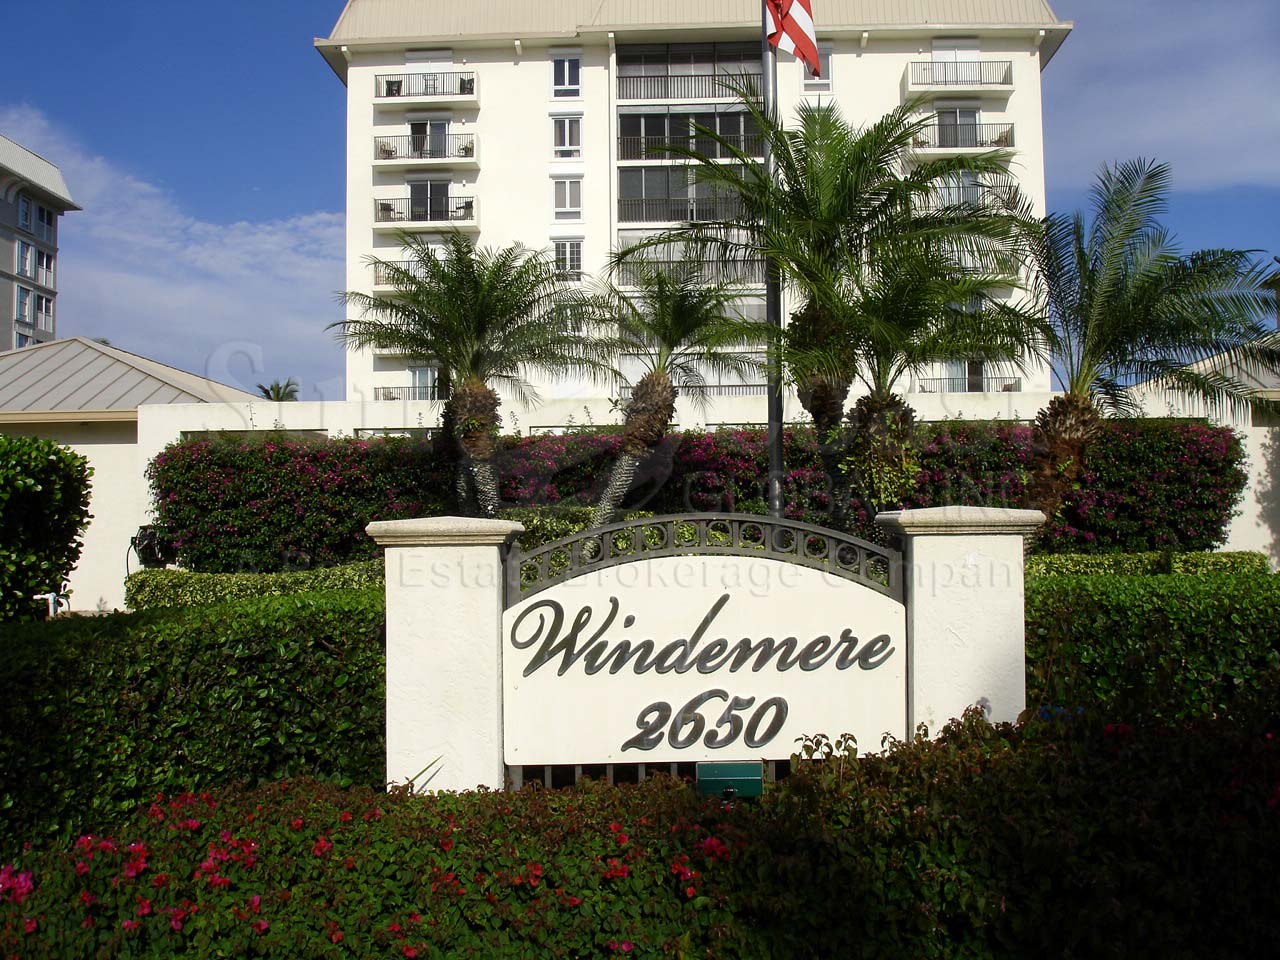 Windemere Condominiums